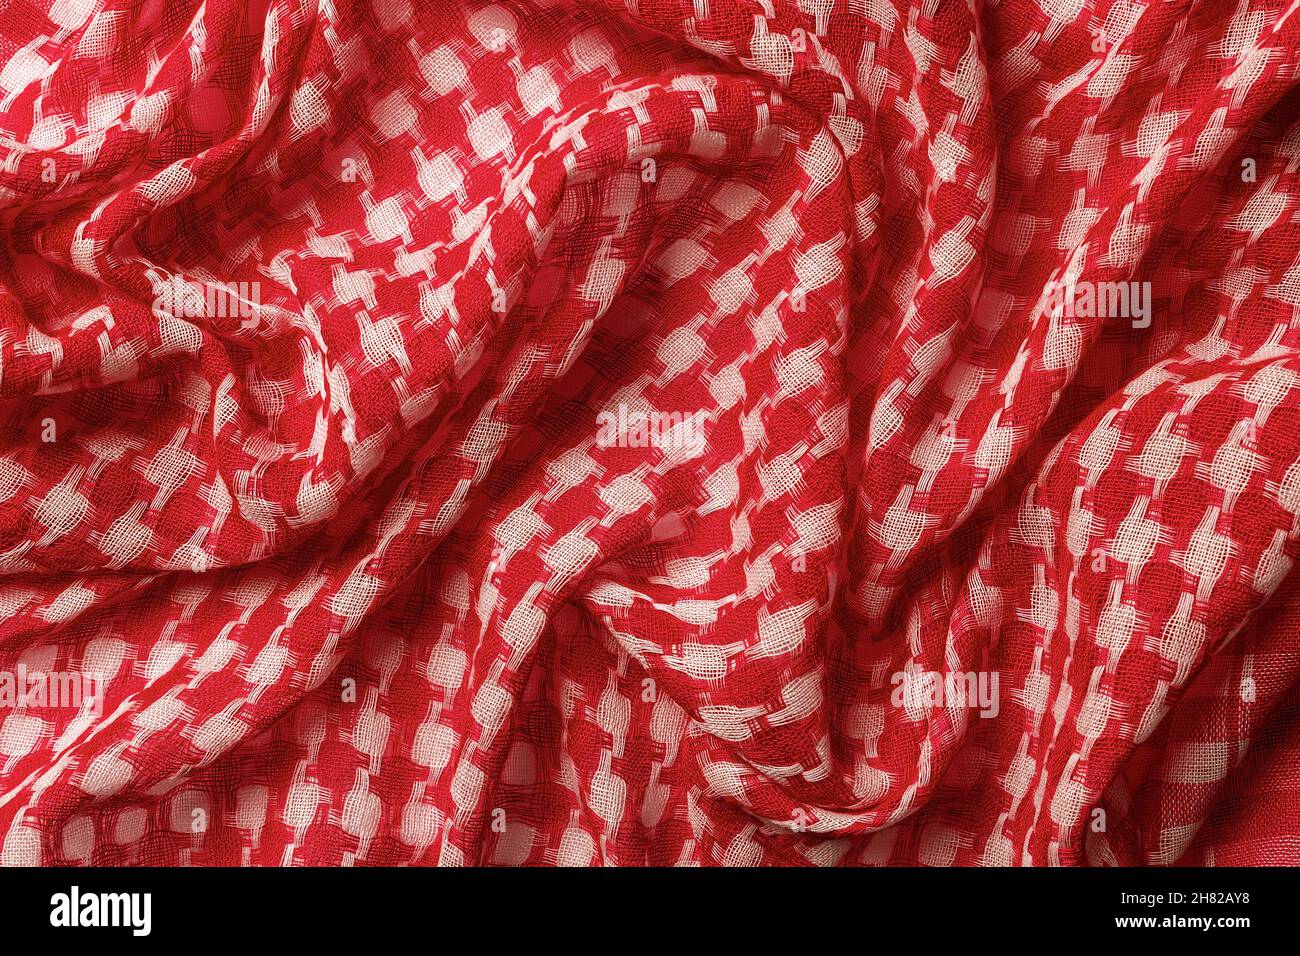 Un shémagh drapé de couleurs rouges et blanches sur le fond.Foulard du désert arabe texture hirbawi.Coton plié keffiyeh macro.Motif kefia plein format.Traditionnel Banque D'Images